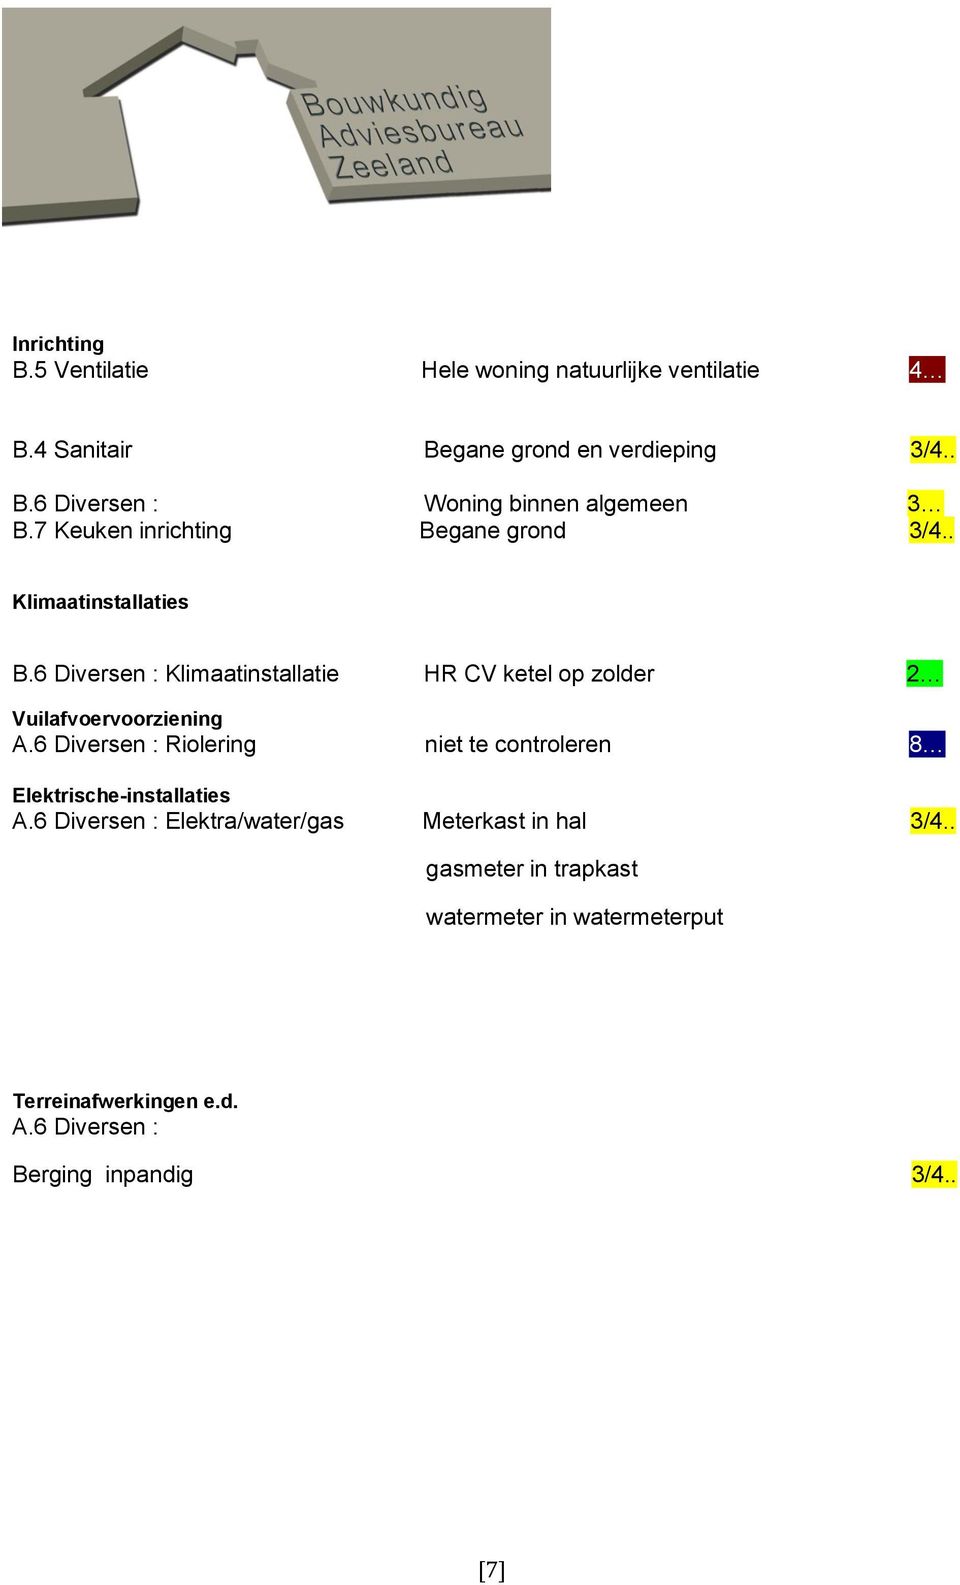 6 Diversen : Klimaatinstallatie HR CV ketel op zolder 2 9 Vuilafvoervoorziening A.